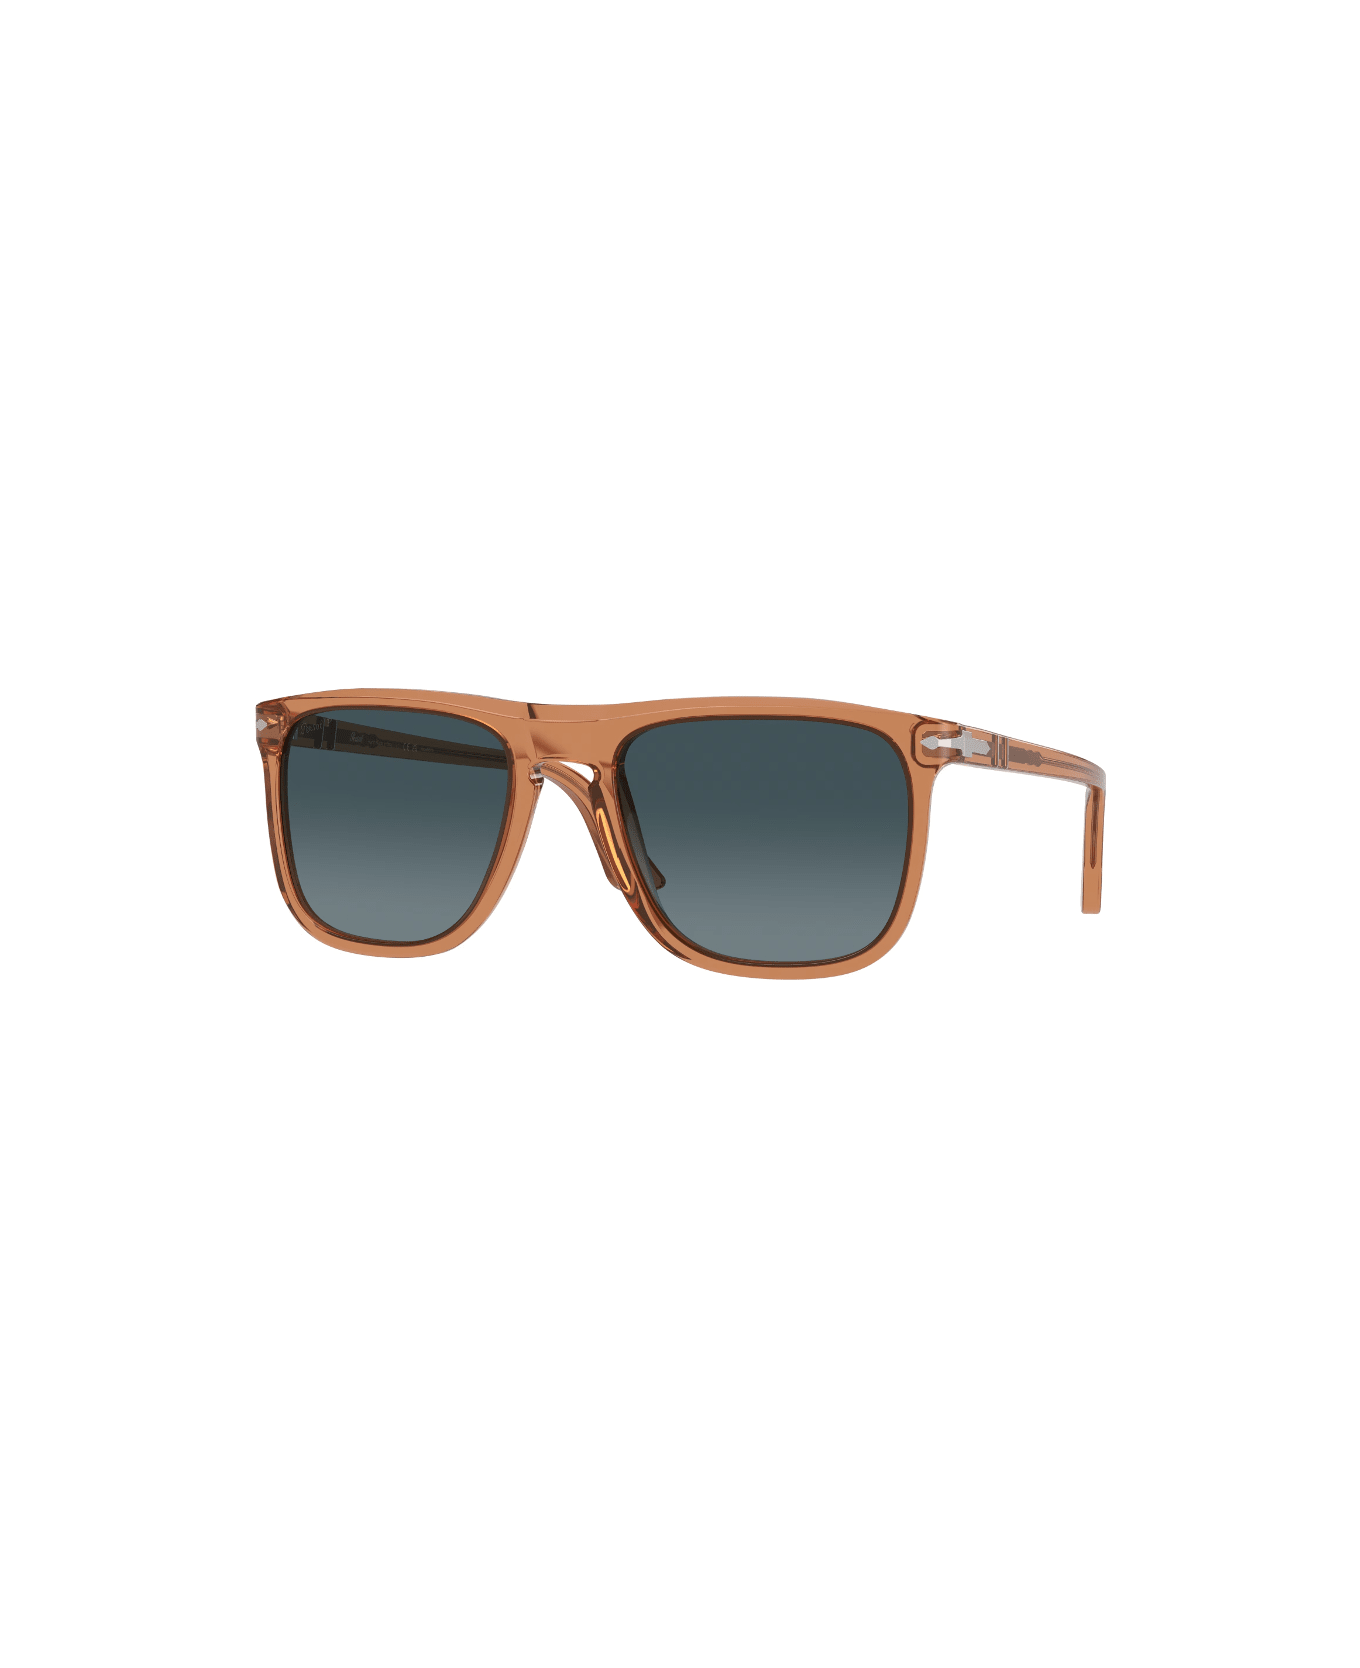 Persol PO3336s - 1213/S3 Sunglasses - Marrone trasparente